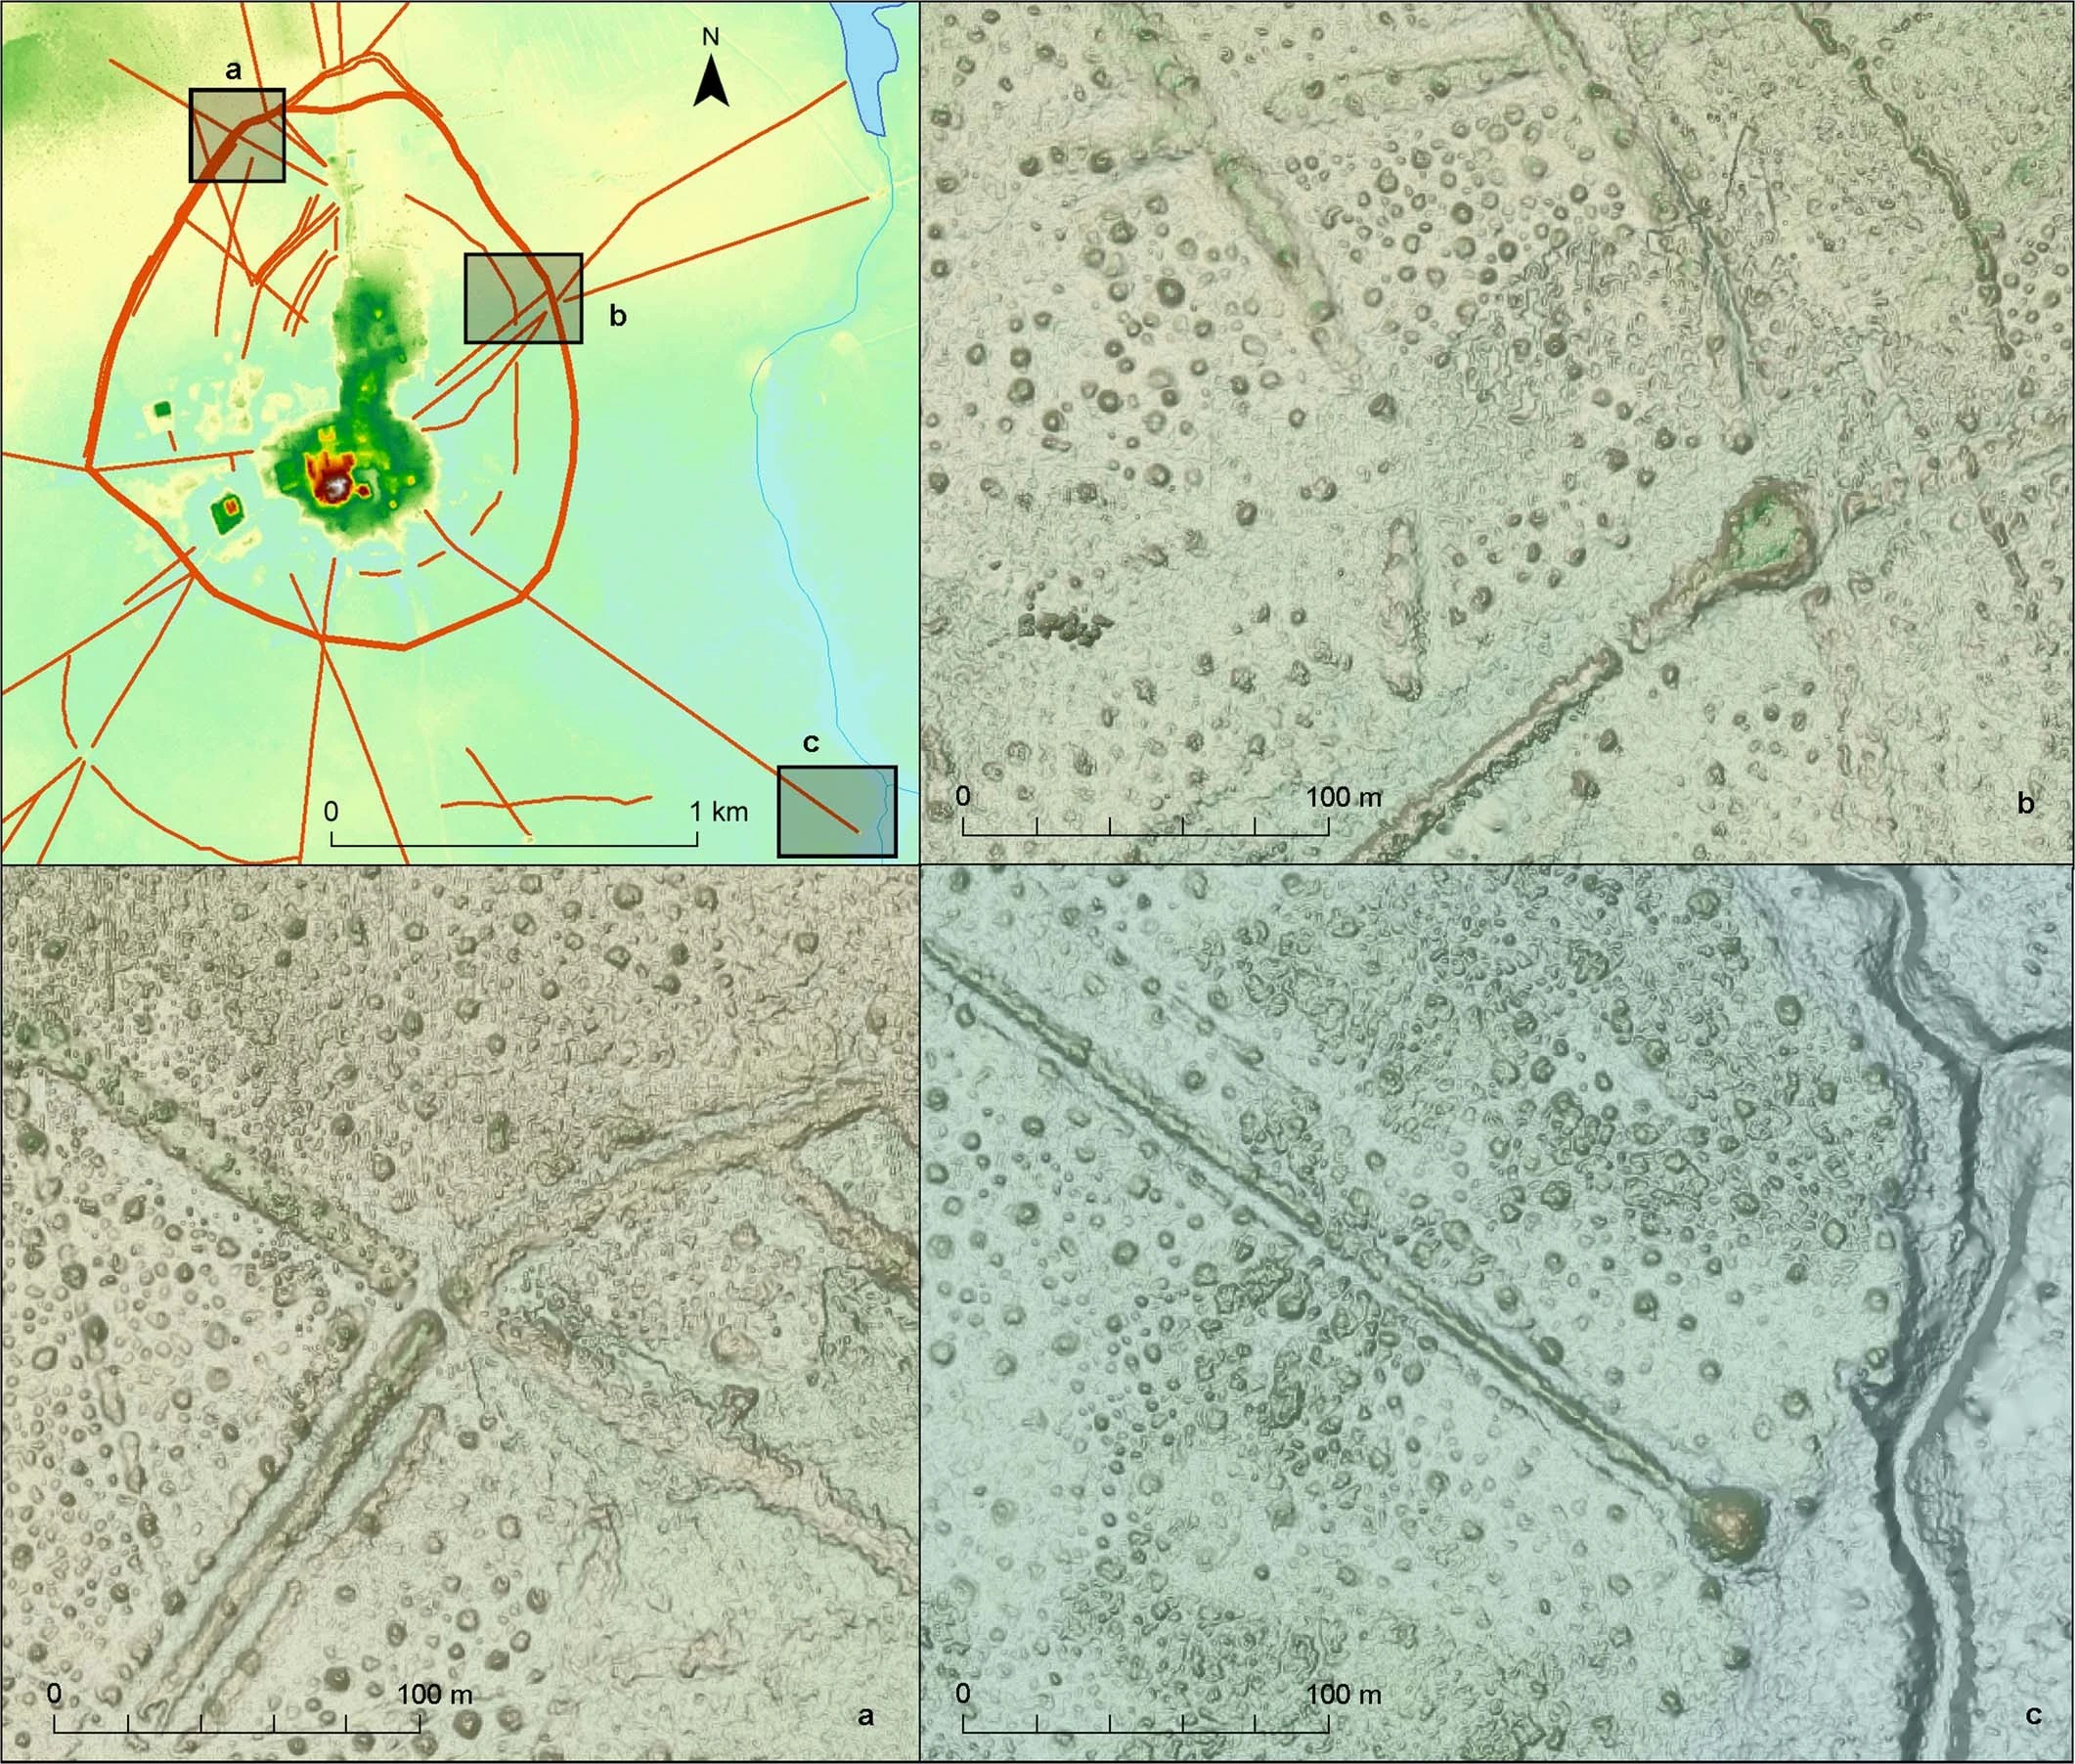 Imágenes Lidar de características descubiertas en la ciudad de Casarabe usando LIDAR.